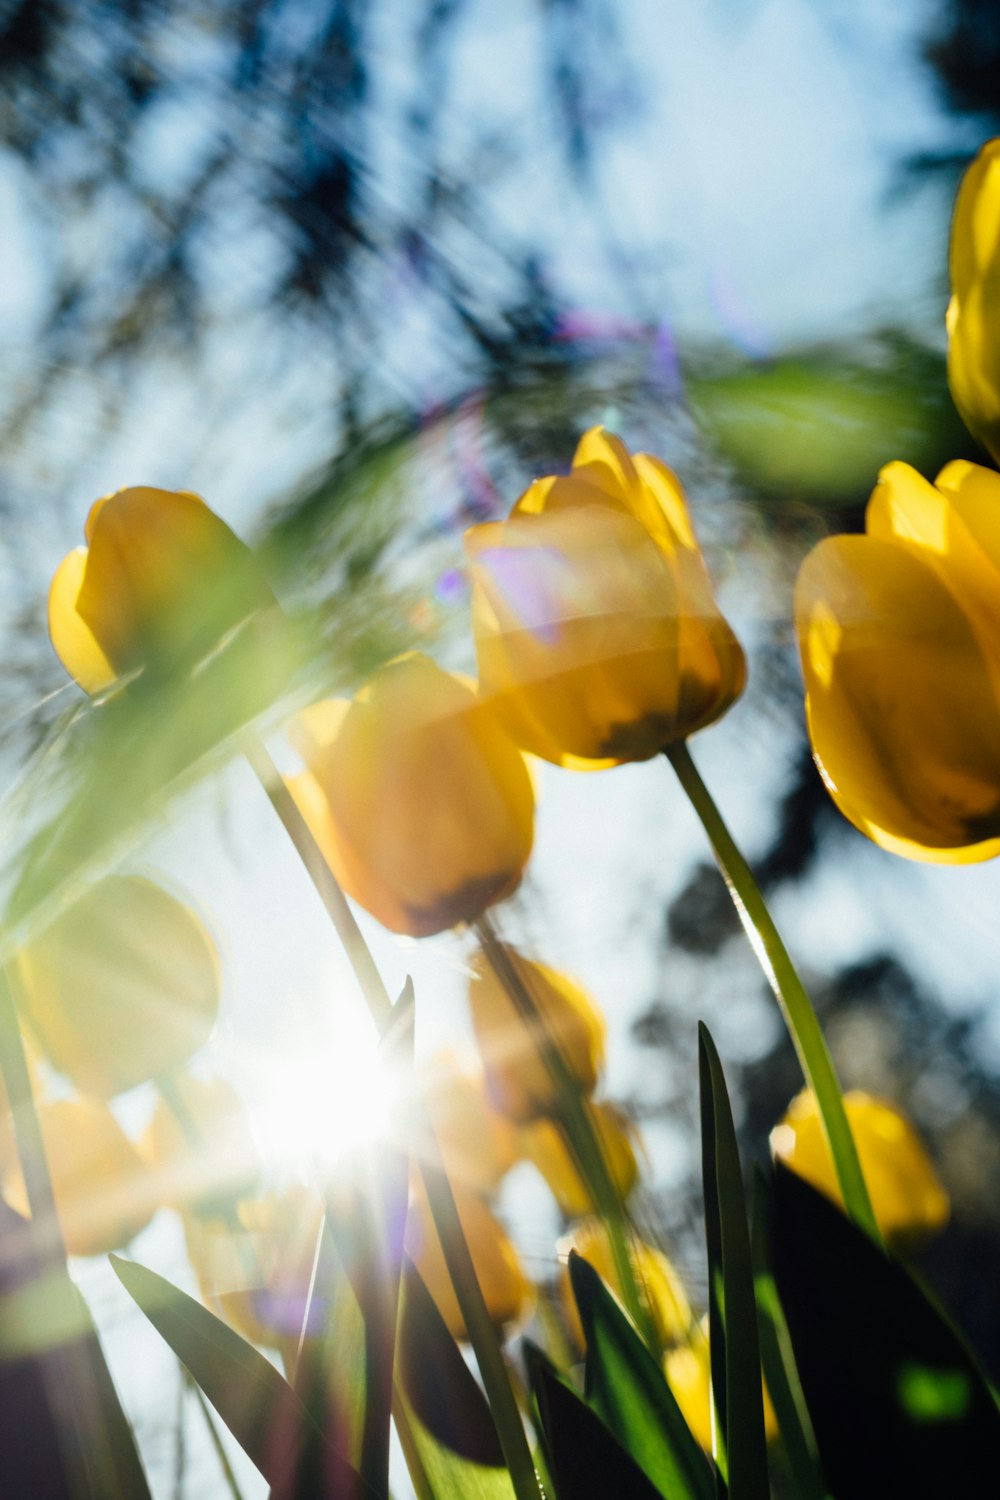 tulipani gialli in fiore durante il giorno